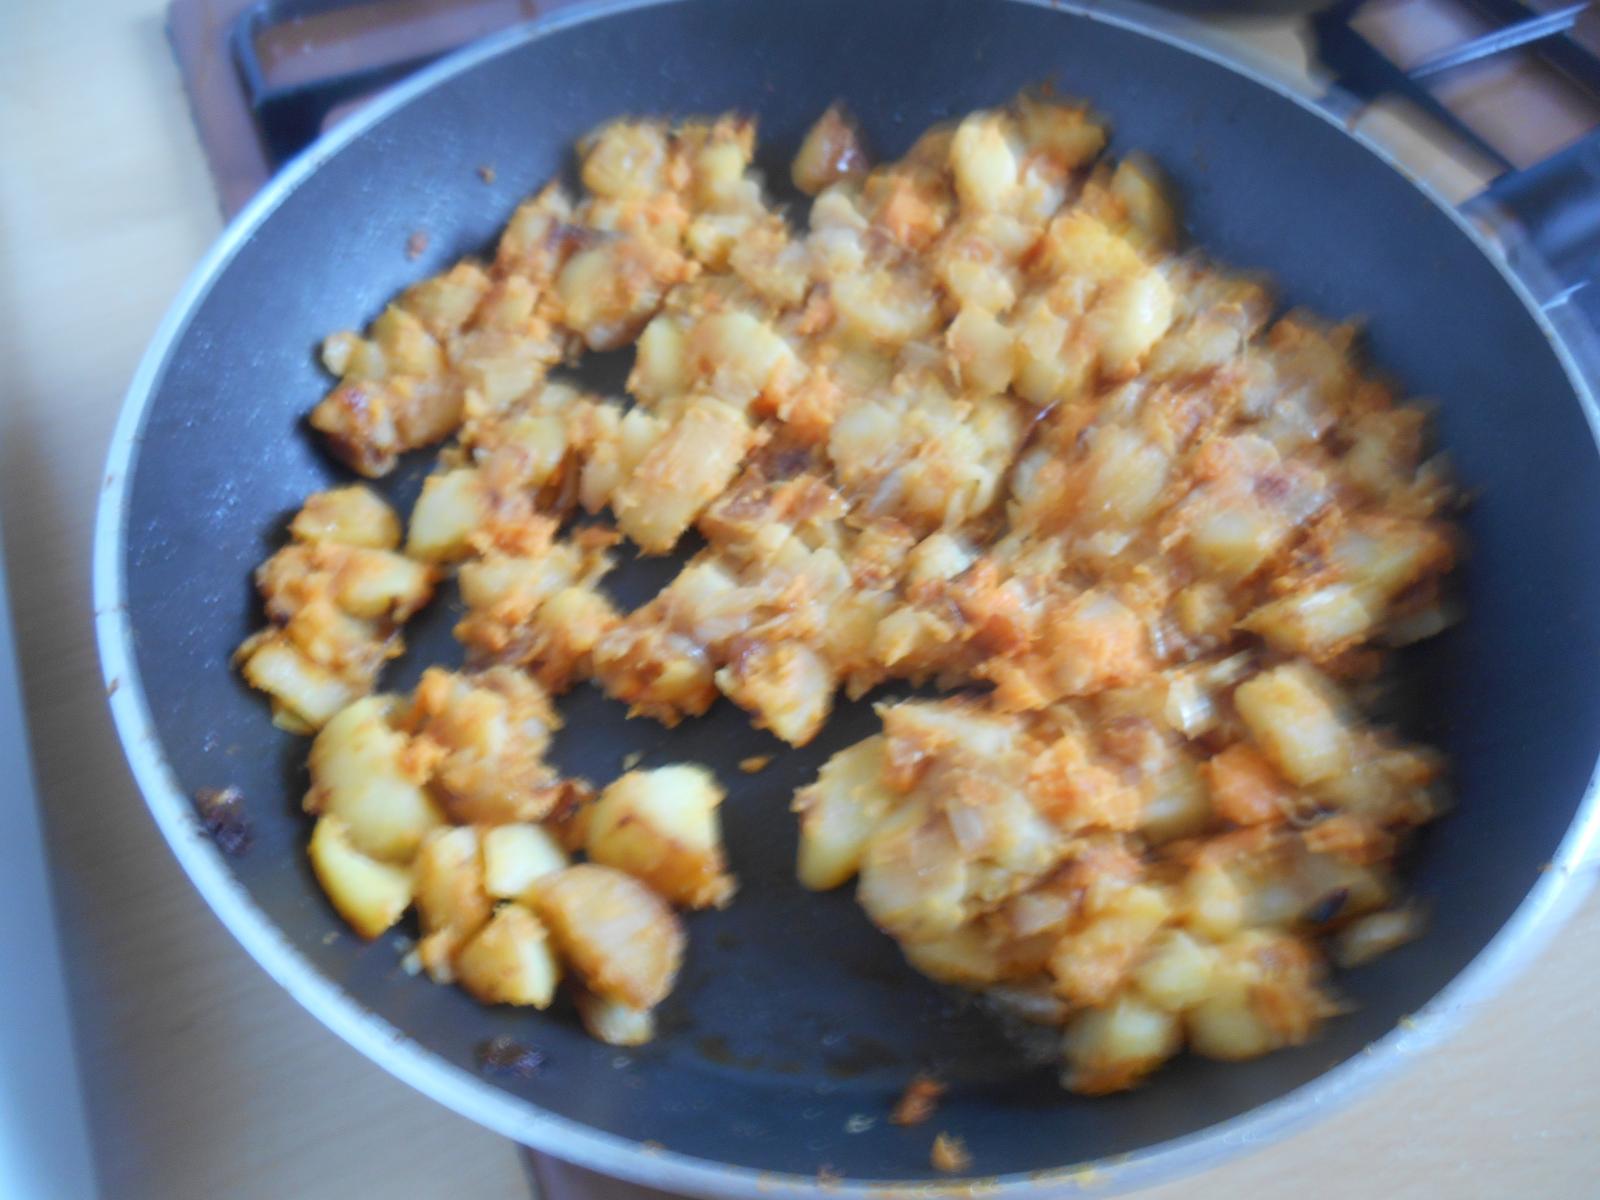 Patates, oignons et patates douces ( Les Moutiers en Retz )